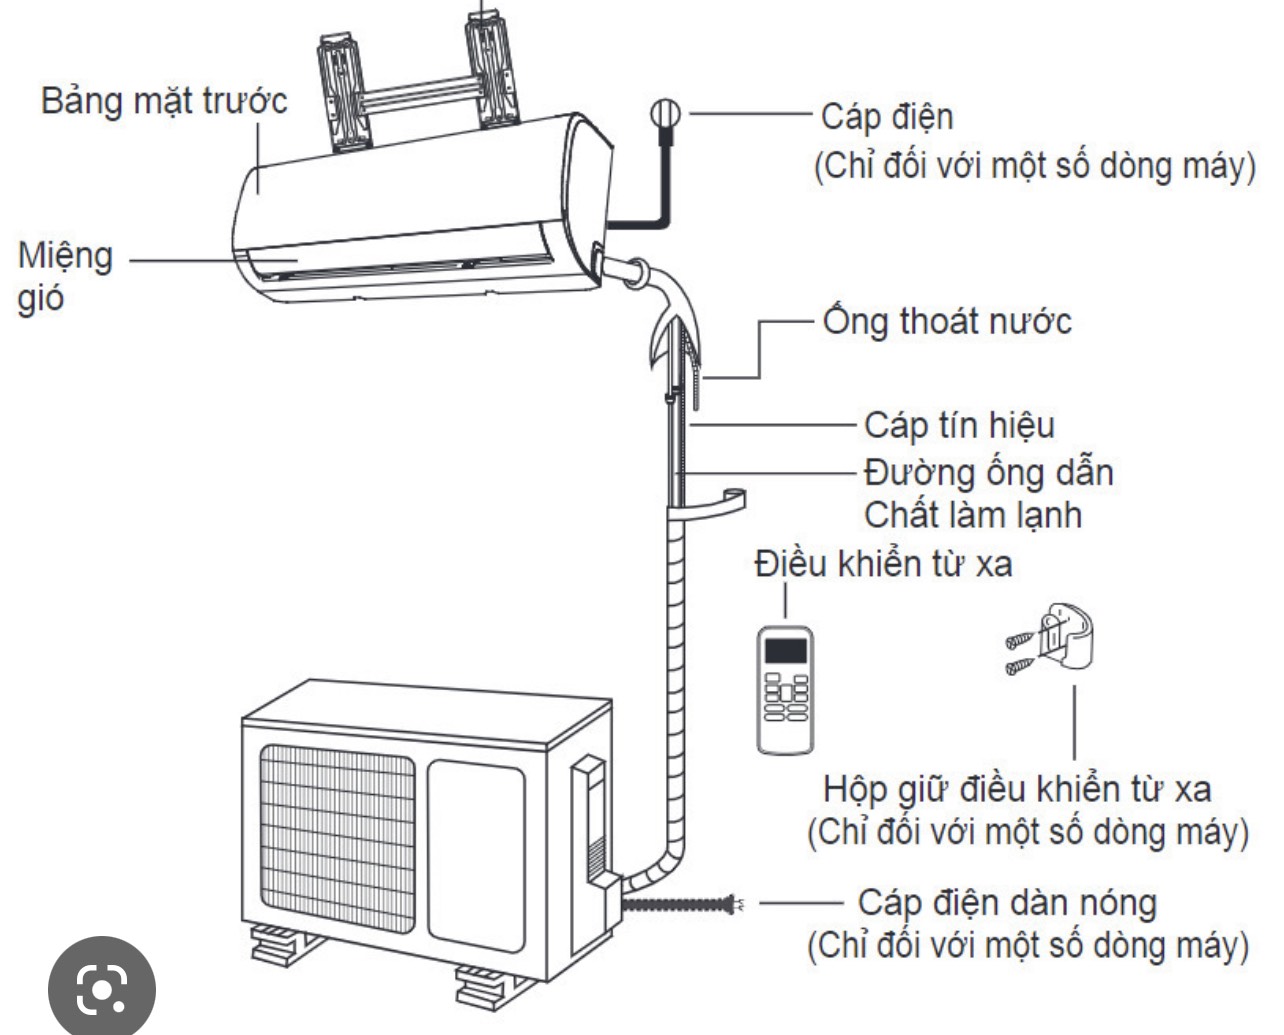 Cách lắp đặt ống gas, ống nước và dây điện